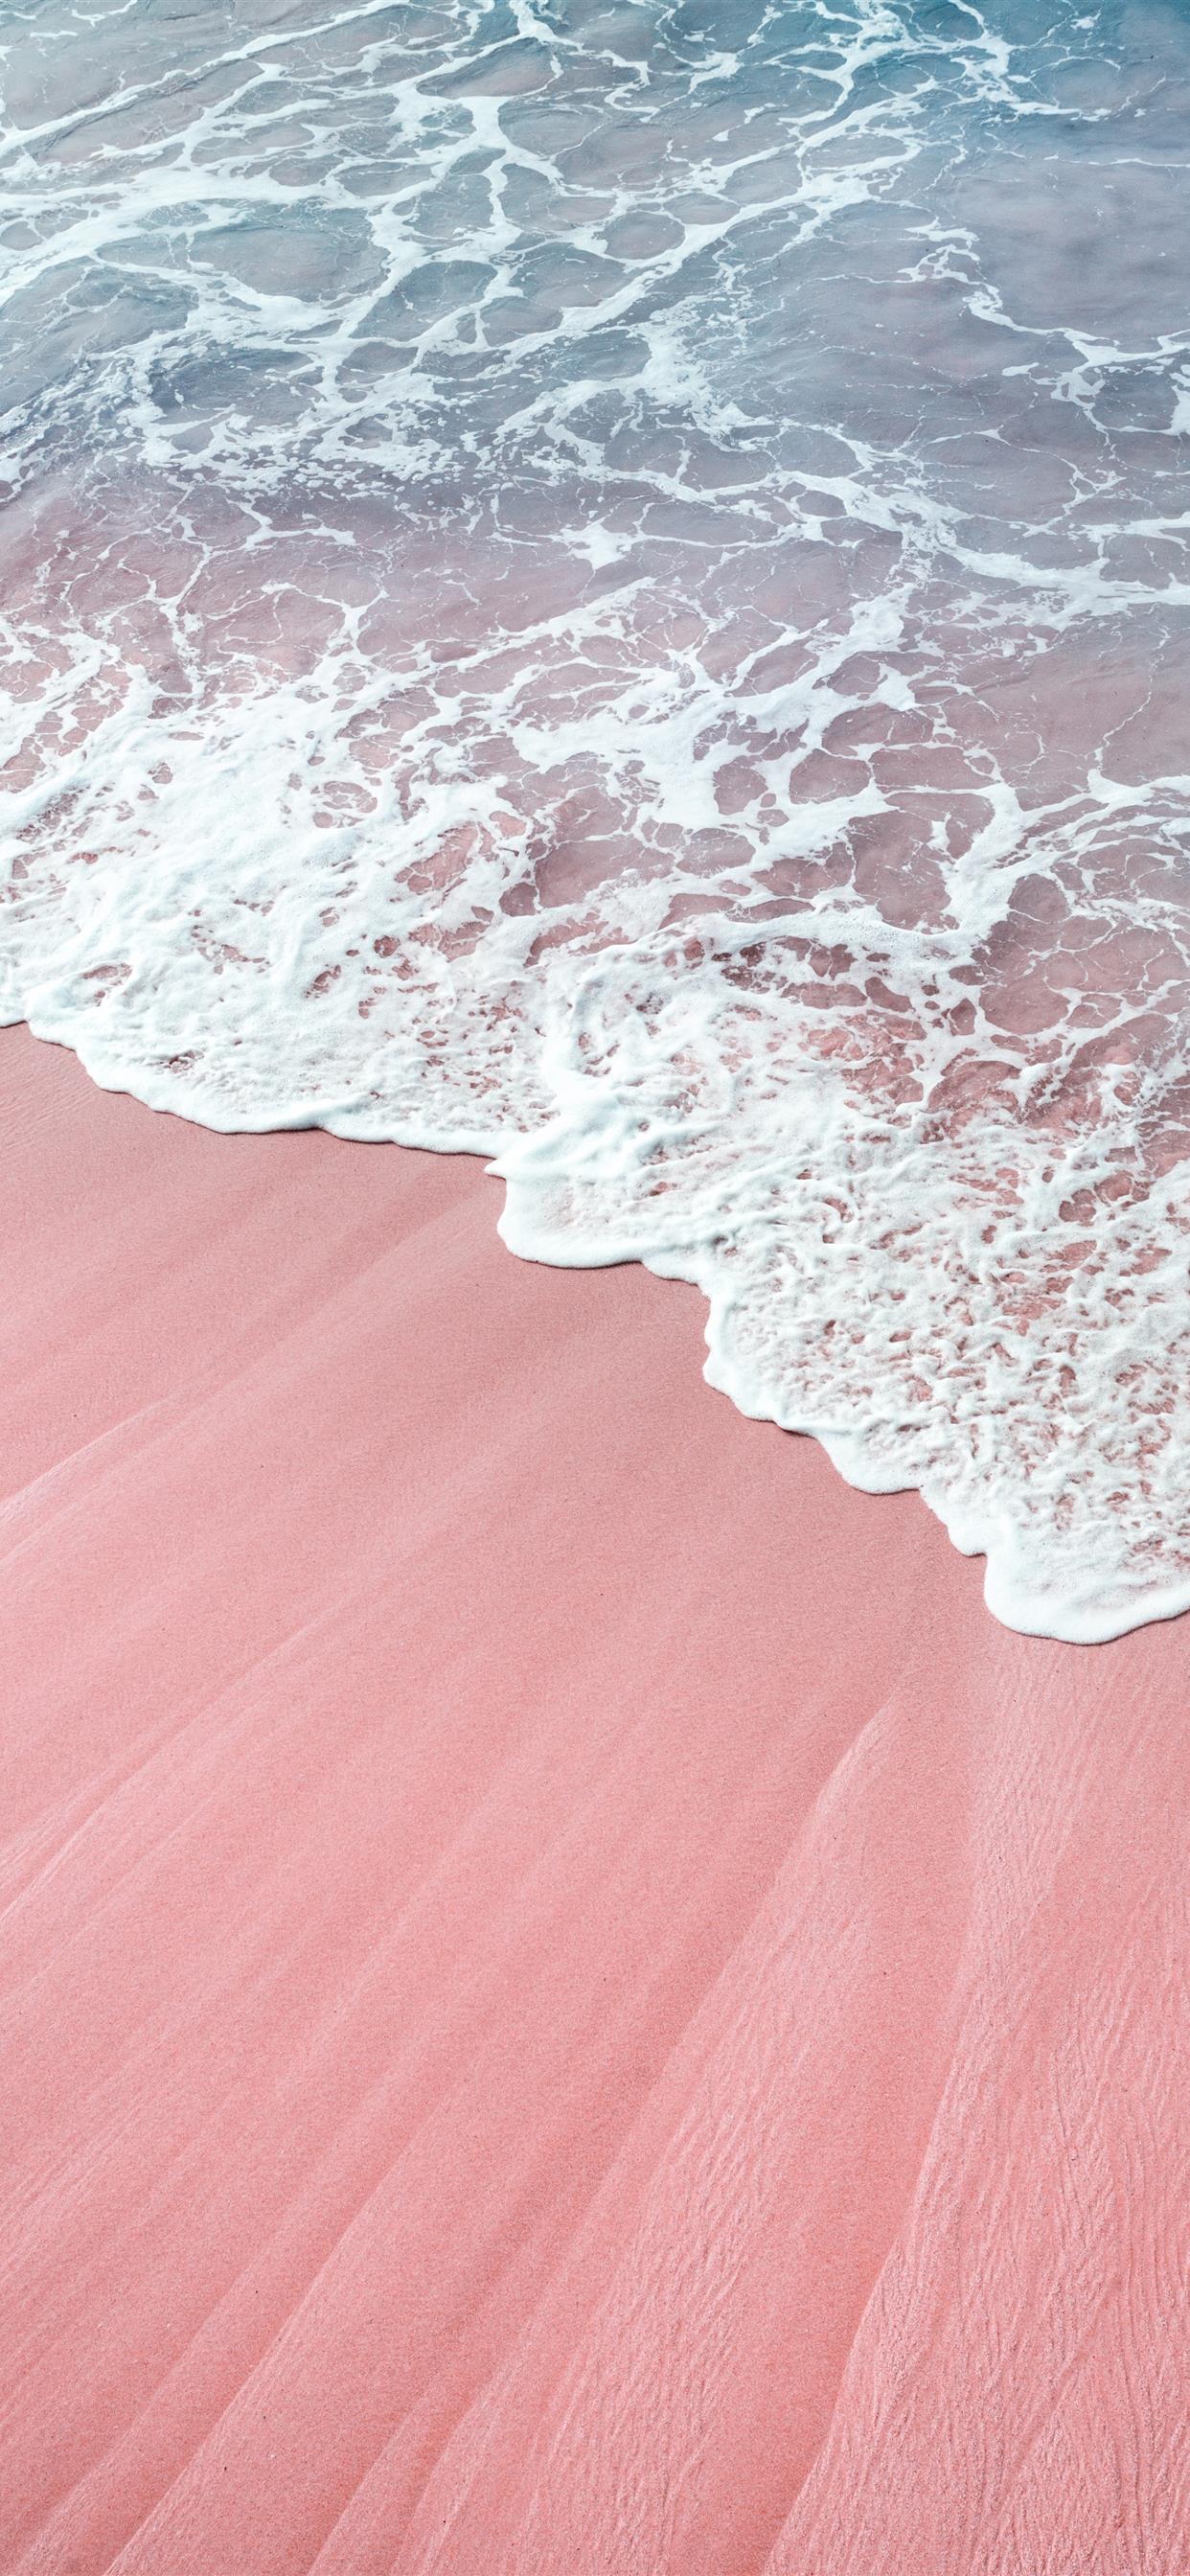 Pink waves iPhone Wallpapers: Mê đắm những đợt sóng xanh biển hay mê hoặc bởi sự dịu dàng của màu hồng? Những bức ảnh Pink waves iPhone Wallpapers sẽ đưa bạn đến với bầu trời tuyệt đẹp của biển cả. Hãy tải về ngay để trang trí cho màn hình của bạn!